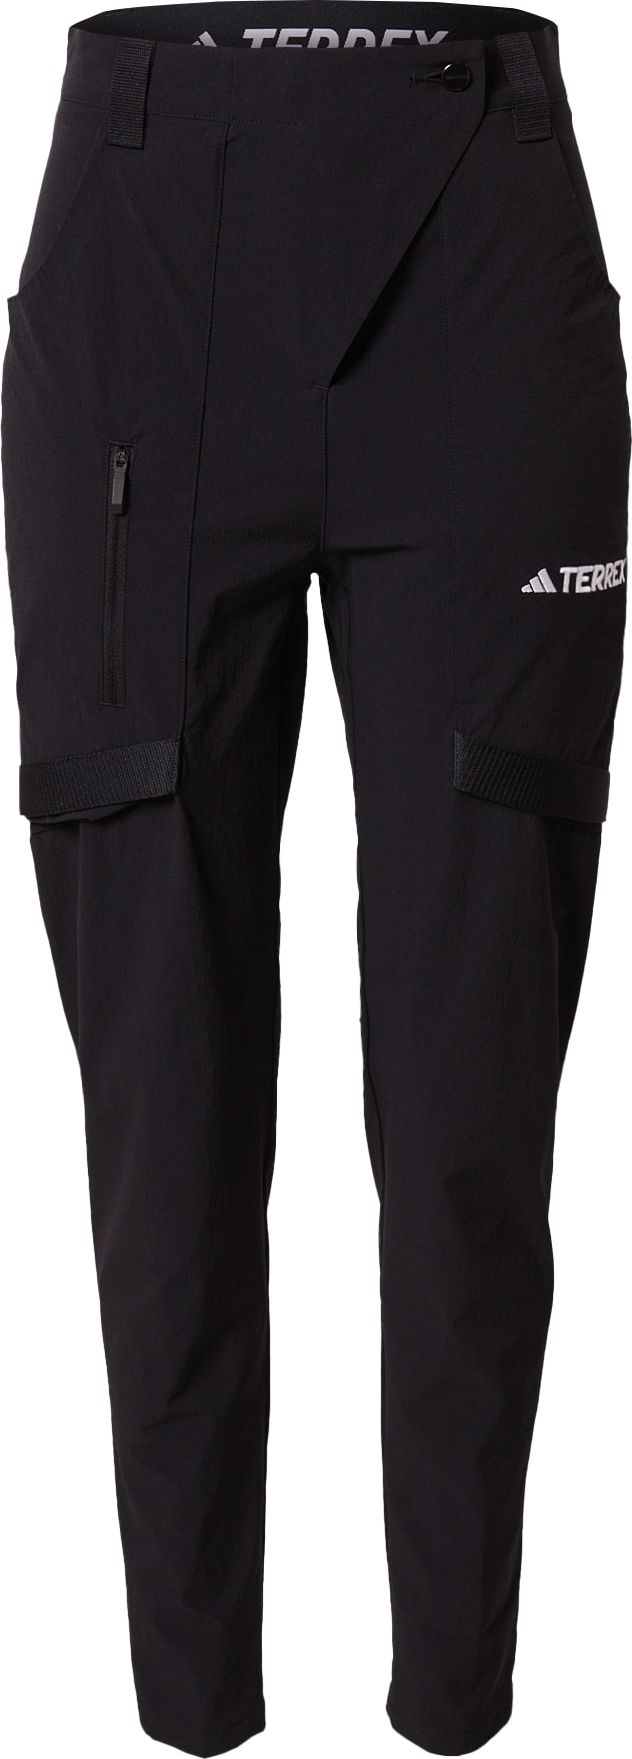 Outdoorové kalhoty 'Xperior' adidas Terrex černá / bílá